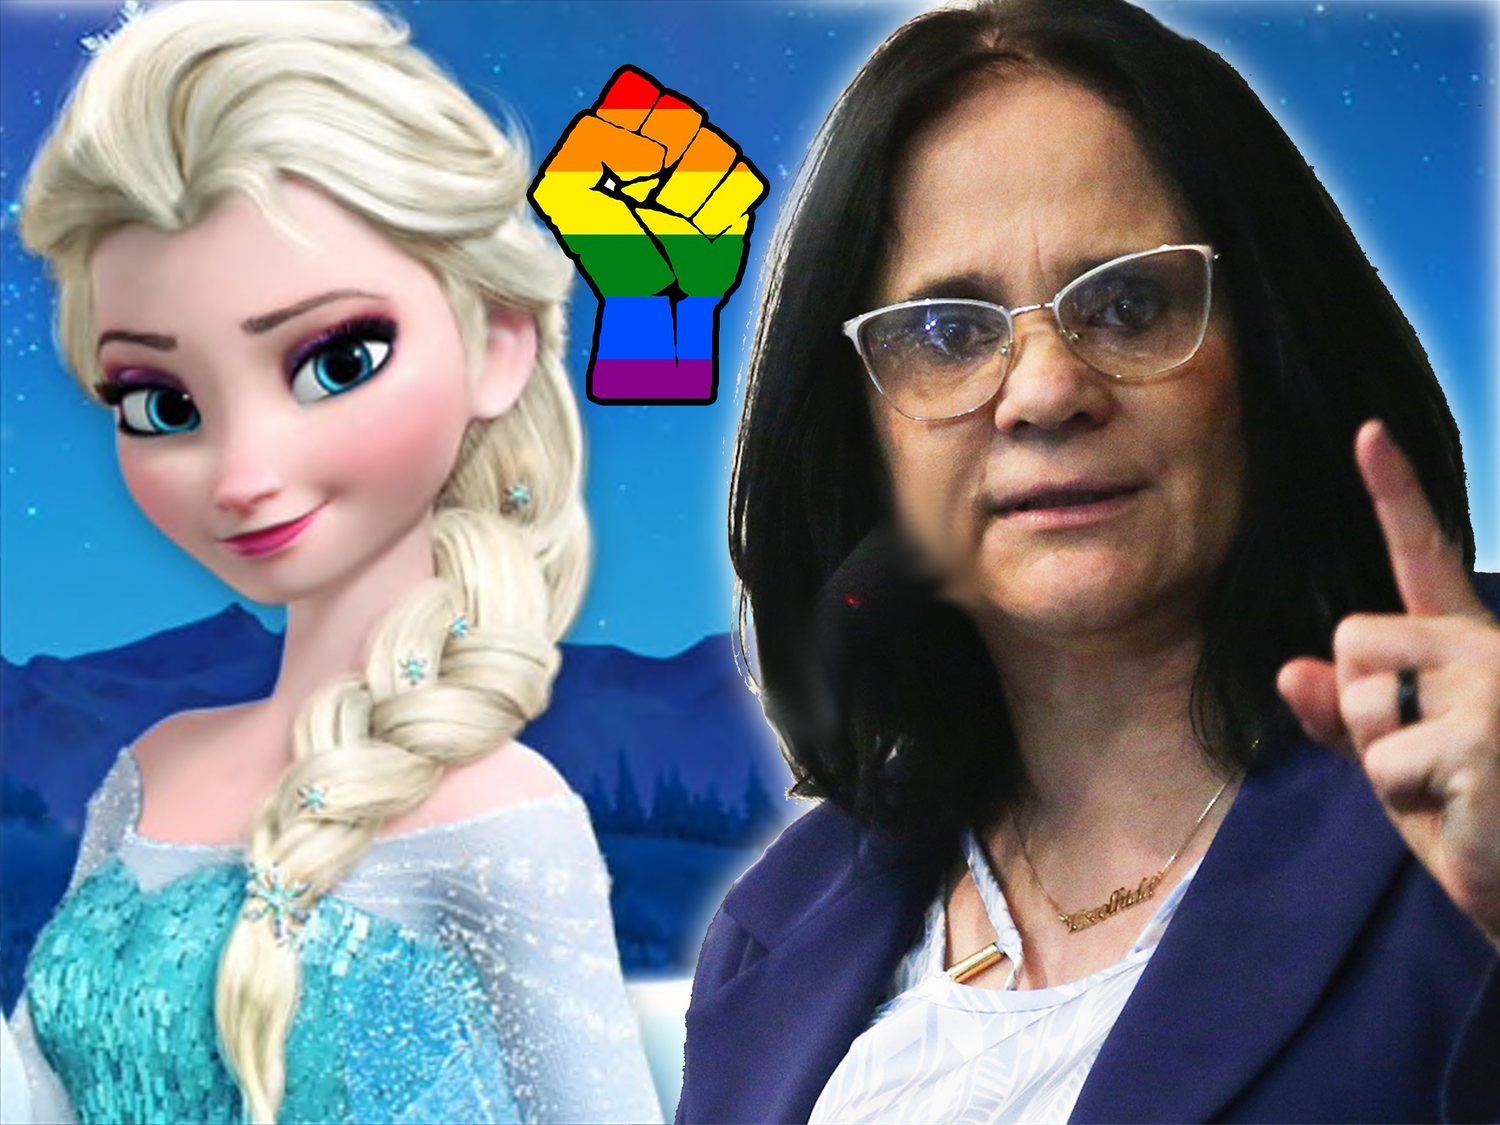 La ministra de Mujer de Brasil quiere vetar 'Frozen': "Convierte a las niñas en lesbianas"